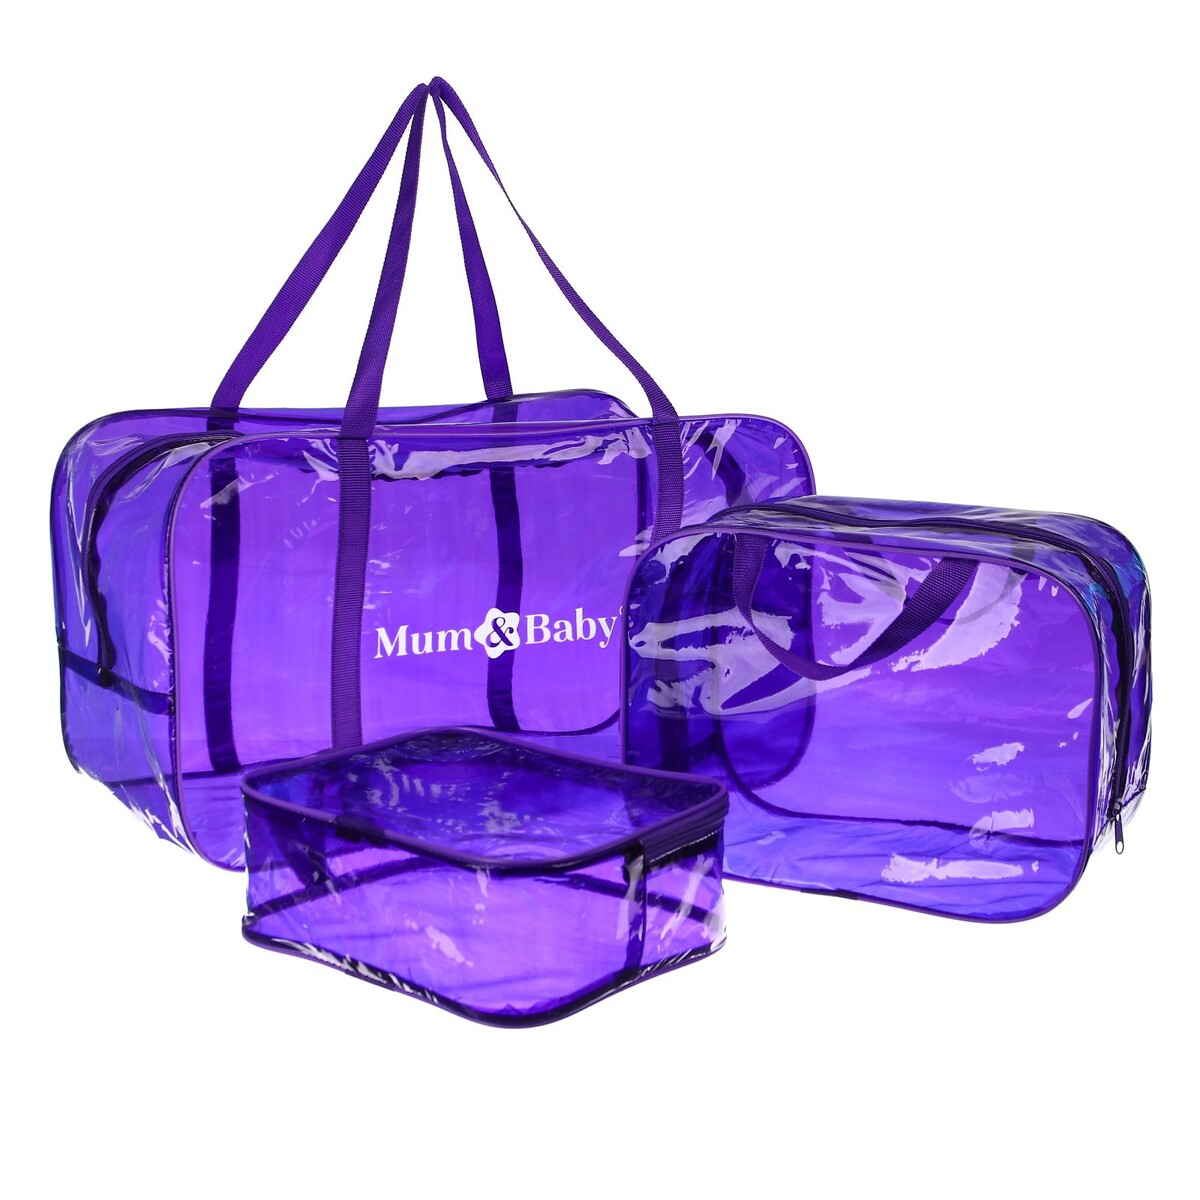 Набор сумок в роддом, 3 шт., цветной пвх, цвет фиолетовый набор коробок 3 в 1 обратный конус фиолетовый без крышек с ручкой 11 х 14 х 14 16 х 16 х 18 см